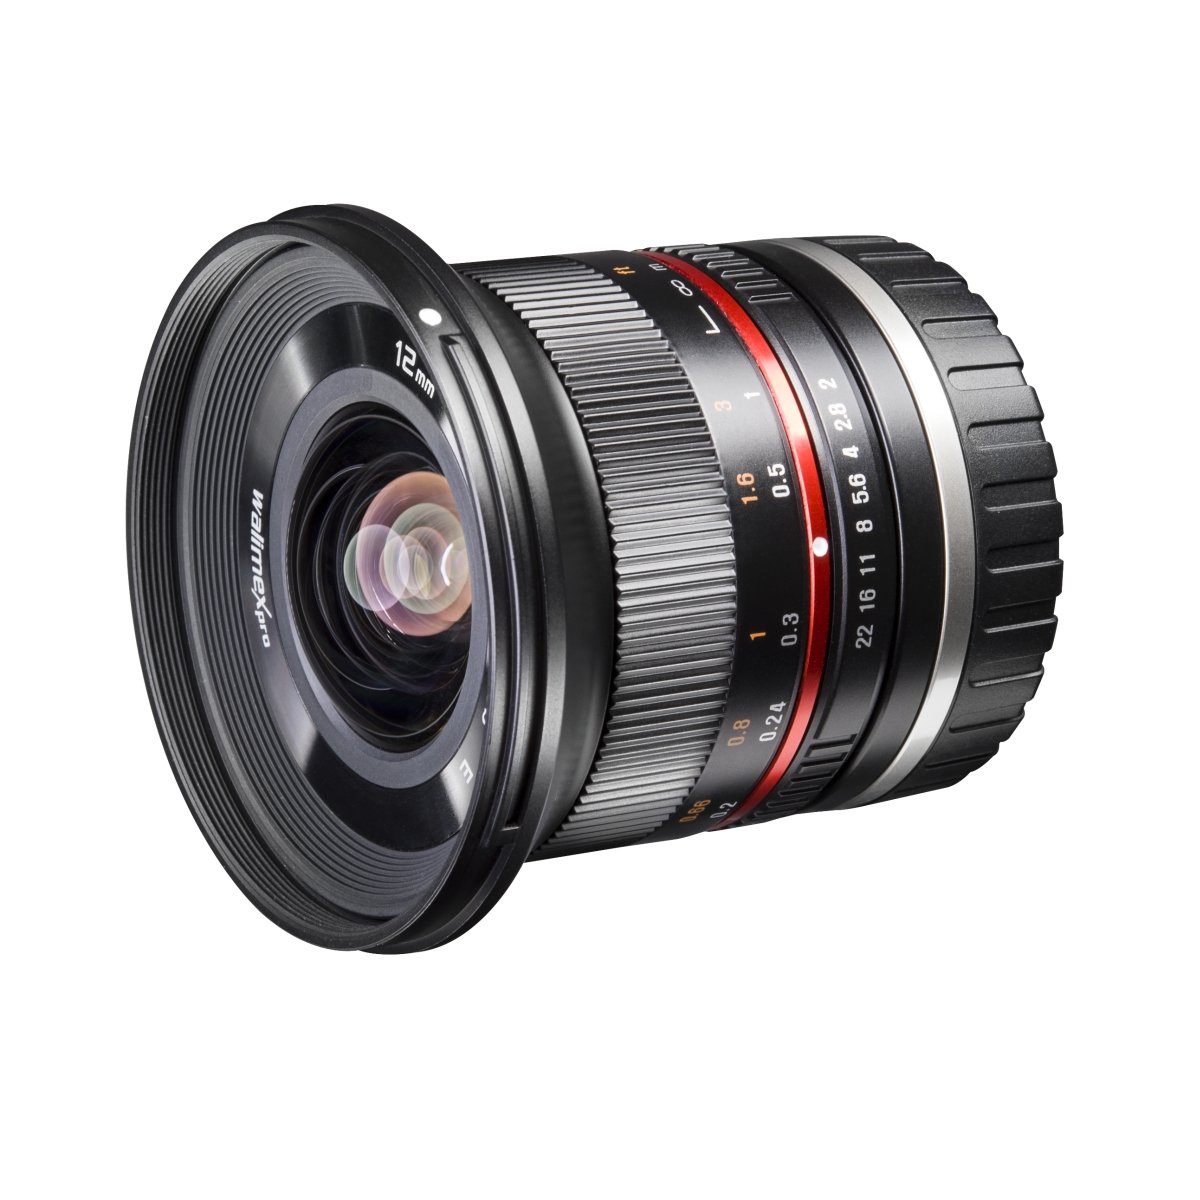 Walimex pro 20155 12mm f1:2,0 Festbrennweite manueller Fokus Weitwinkelobjektiv für Sony E Mount, Kamera Objektiv lichtstark für Systemkamera für A5000 A5100 A6000 A6300 A6500 Serie, Nex, schwarz